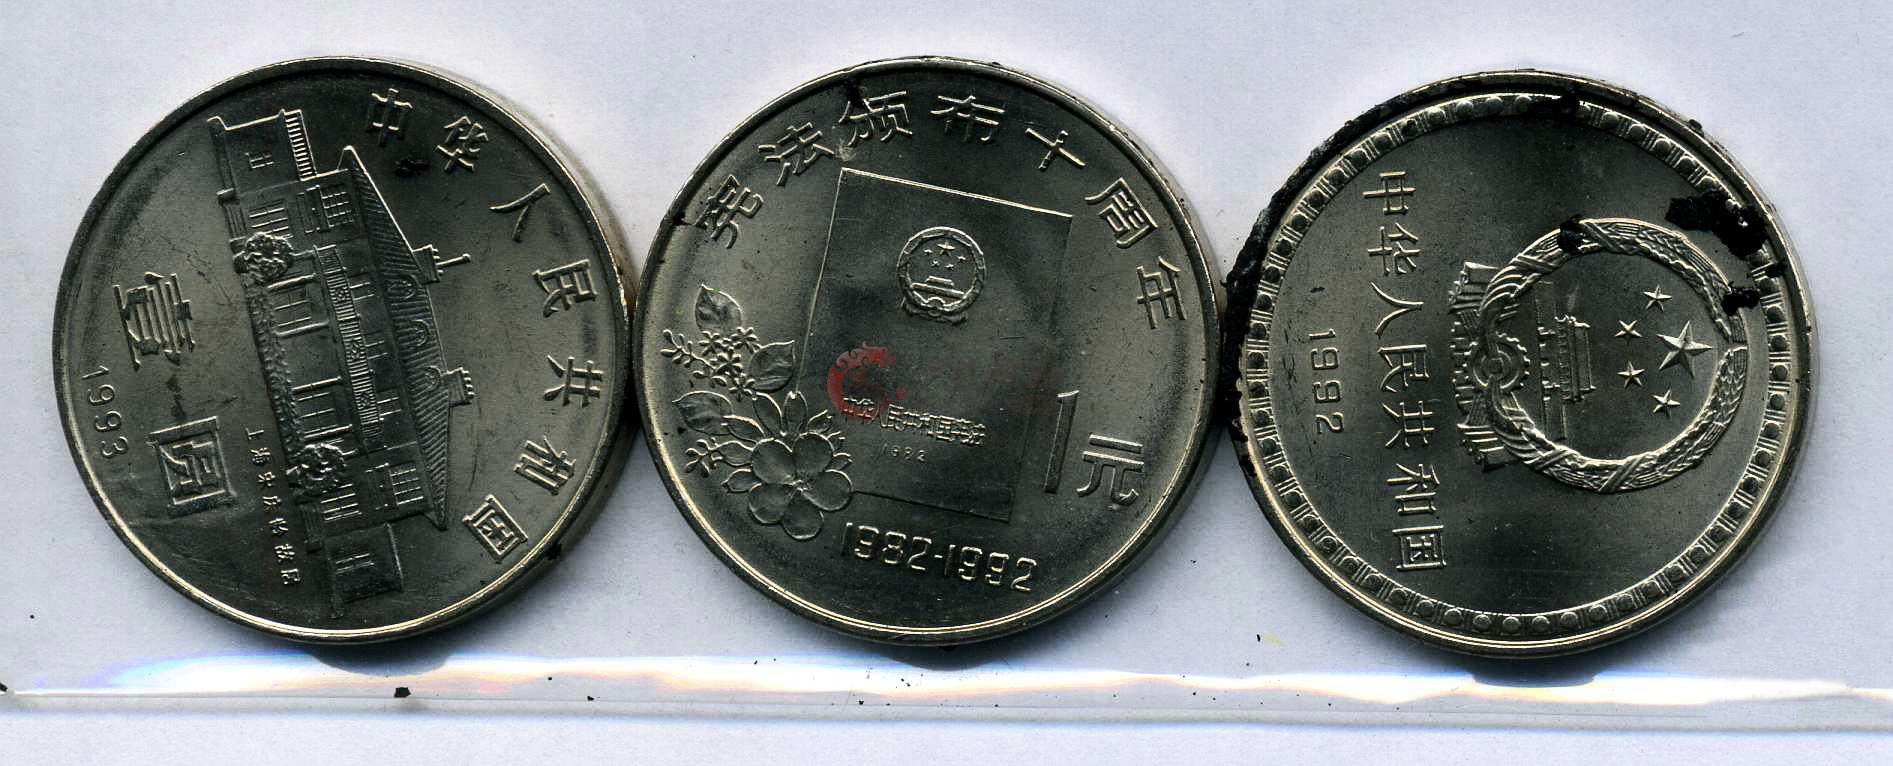 1992宪法颁布10周年纪念币